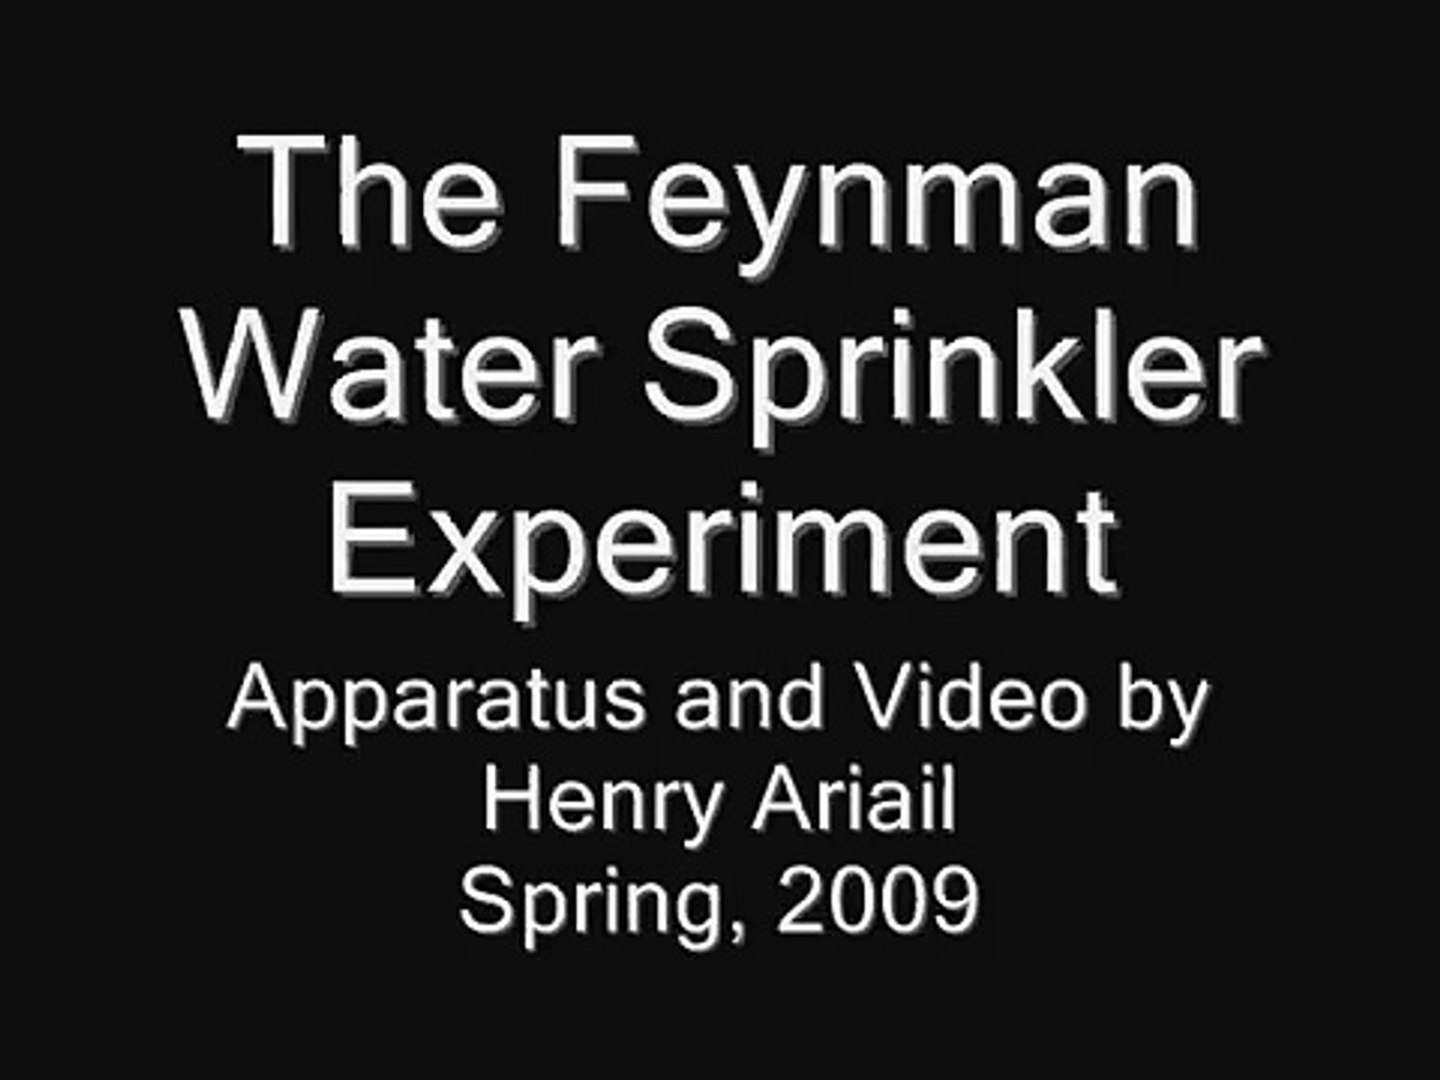 Feynman Water Sprinkler Experiment - Under Water!